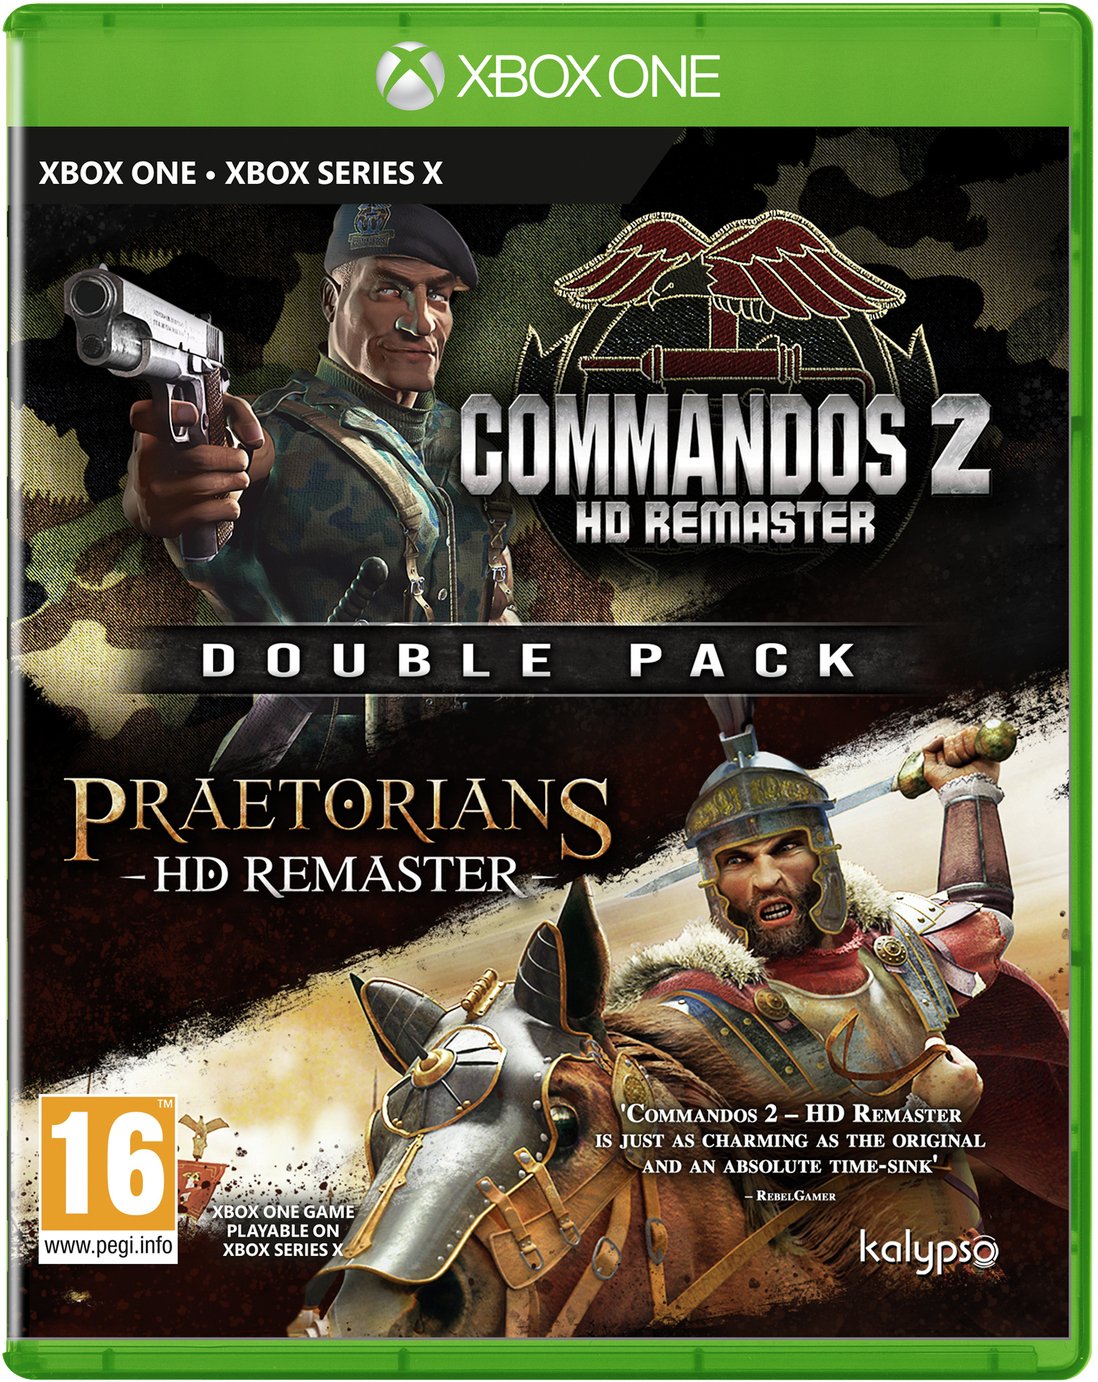 Commandos 2 & Praetorians HD Remaster Xbox One Pre-Order Review